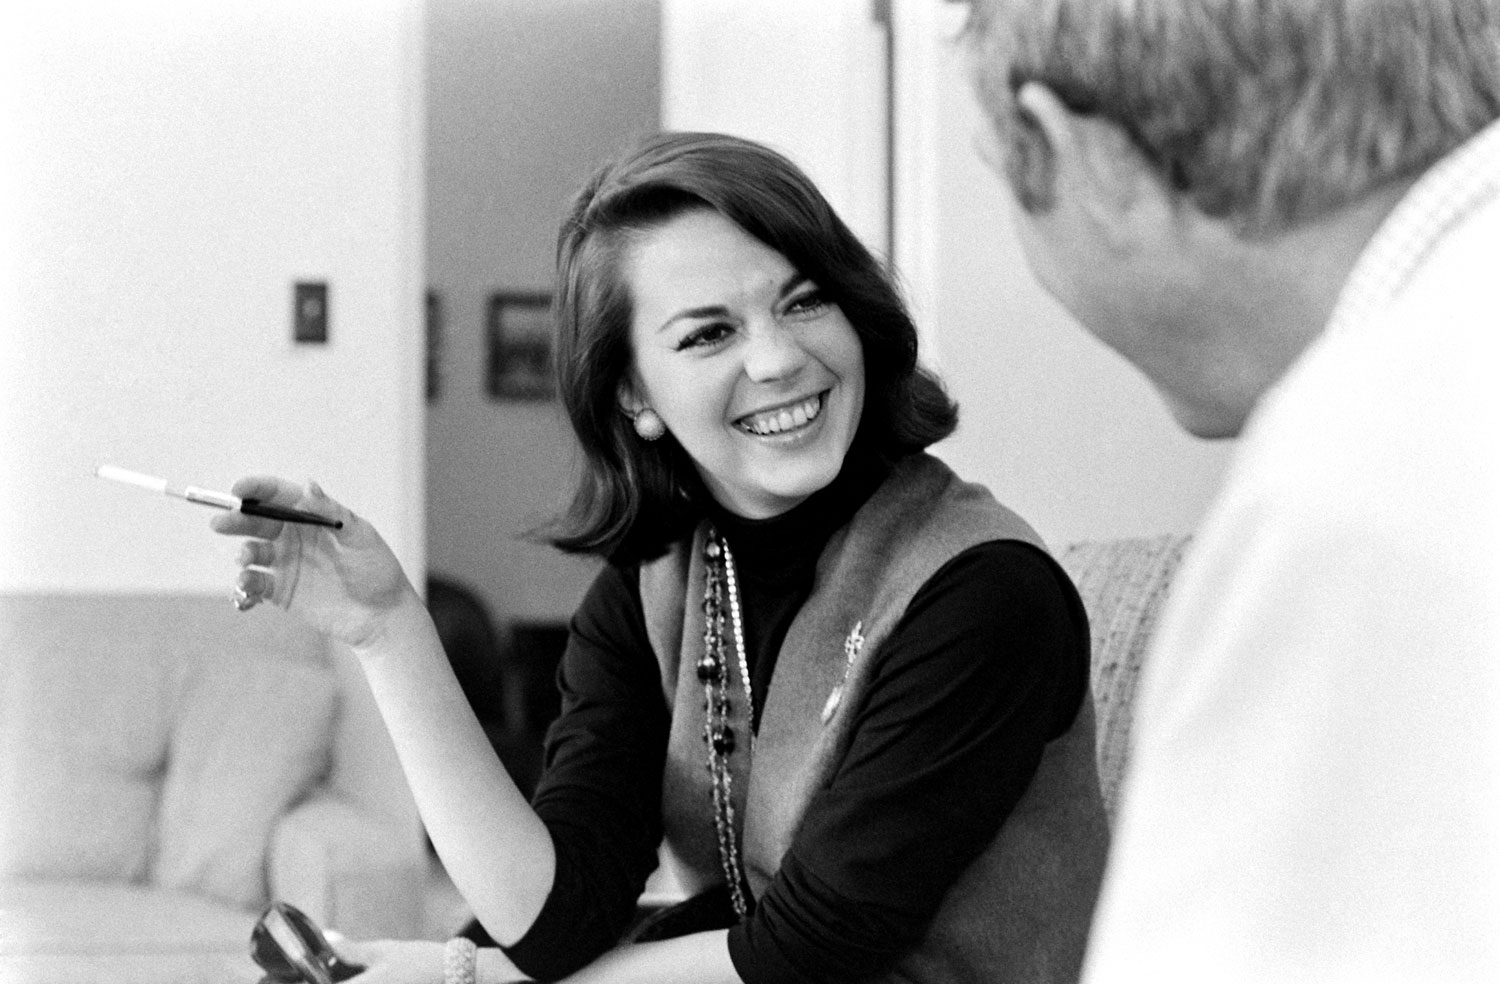 Natalie Wood and Steve McQueen meeting in 1963.